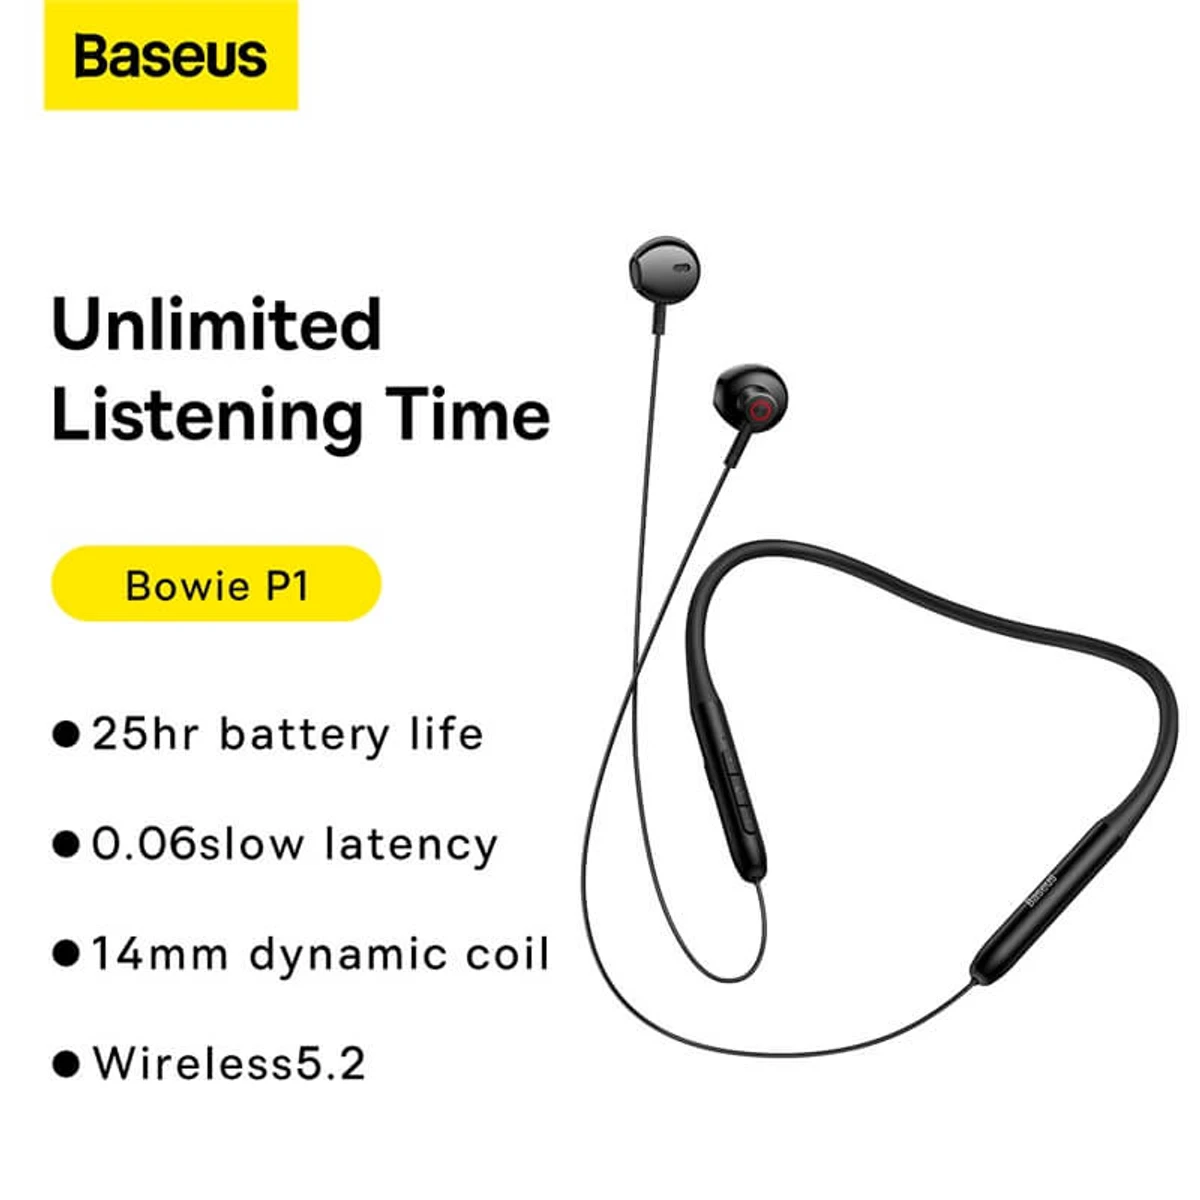 Baseus Bowie P1 Half In-ear Neckband Wireless Earphones